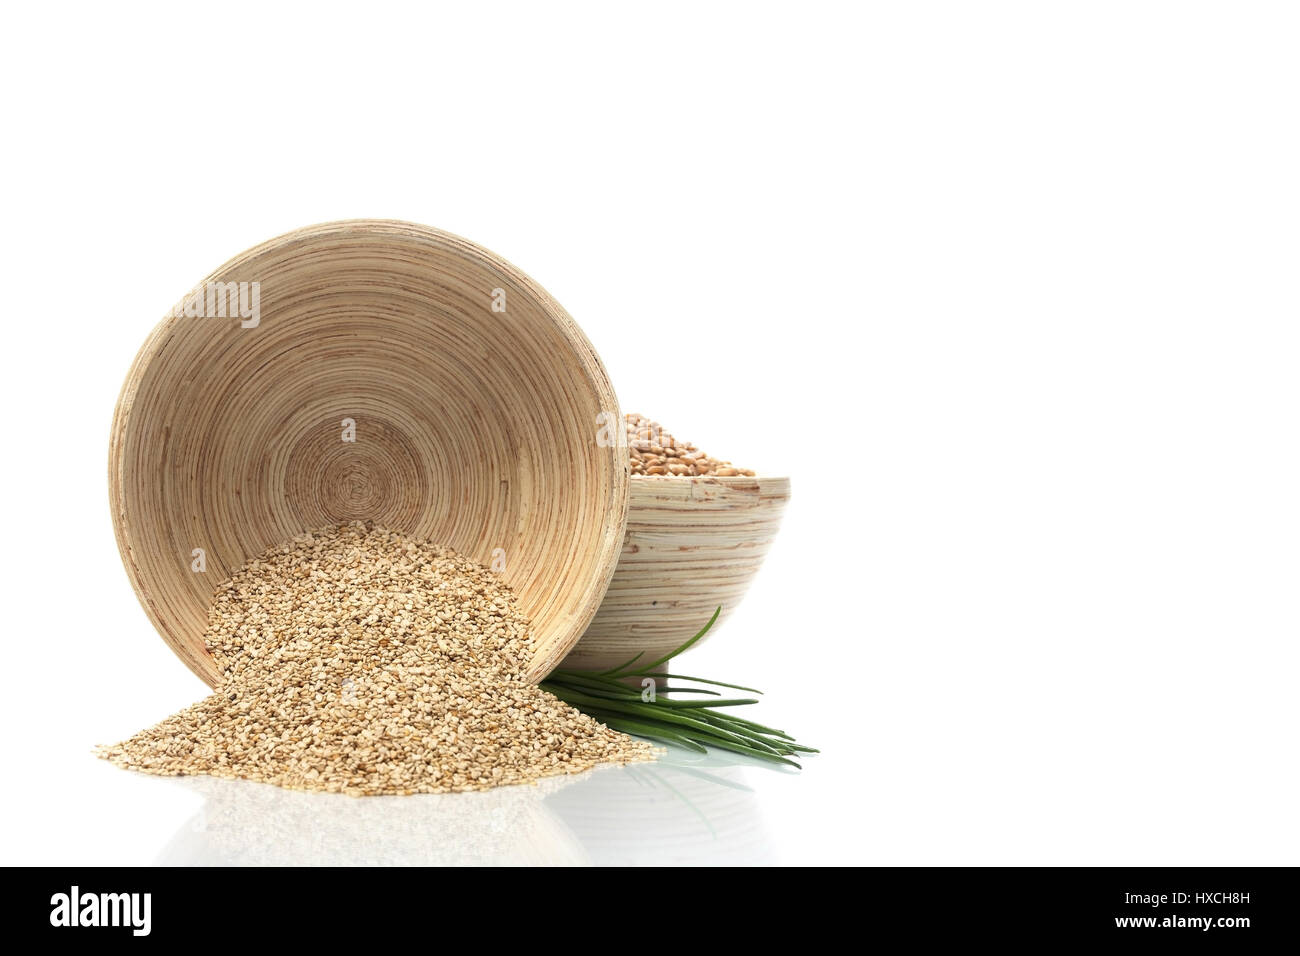 Wooden bowls with sesame punch, Holzschalen mit Sesamkoerner Stock Photo